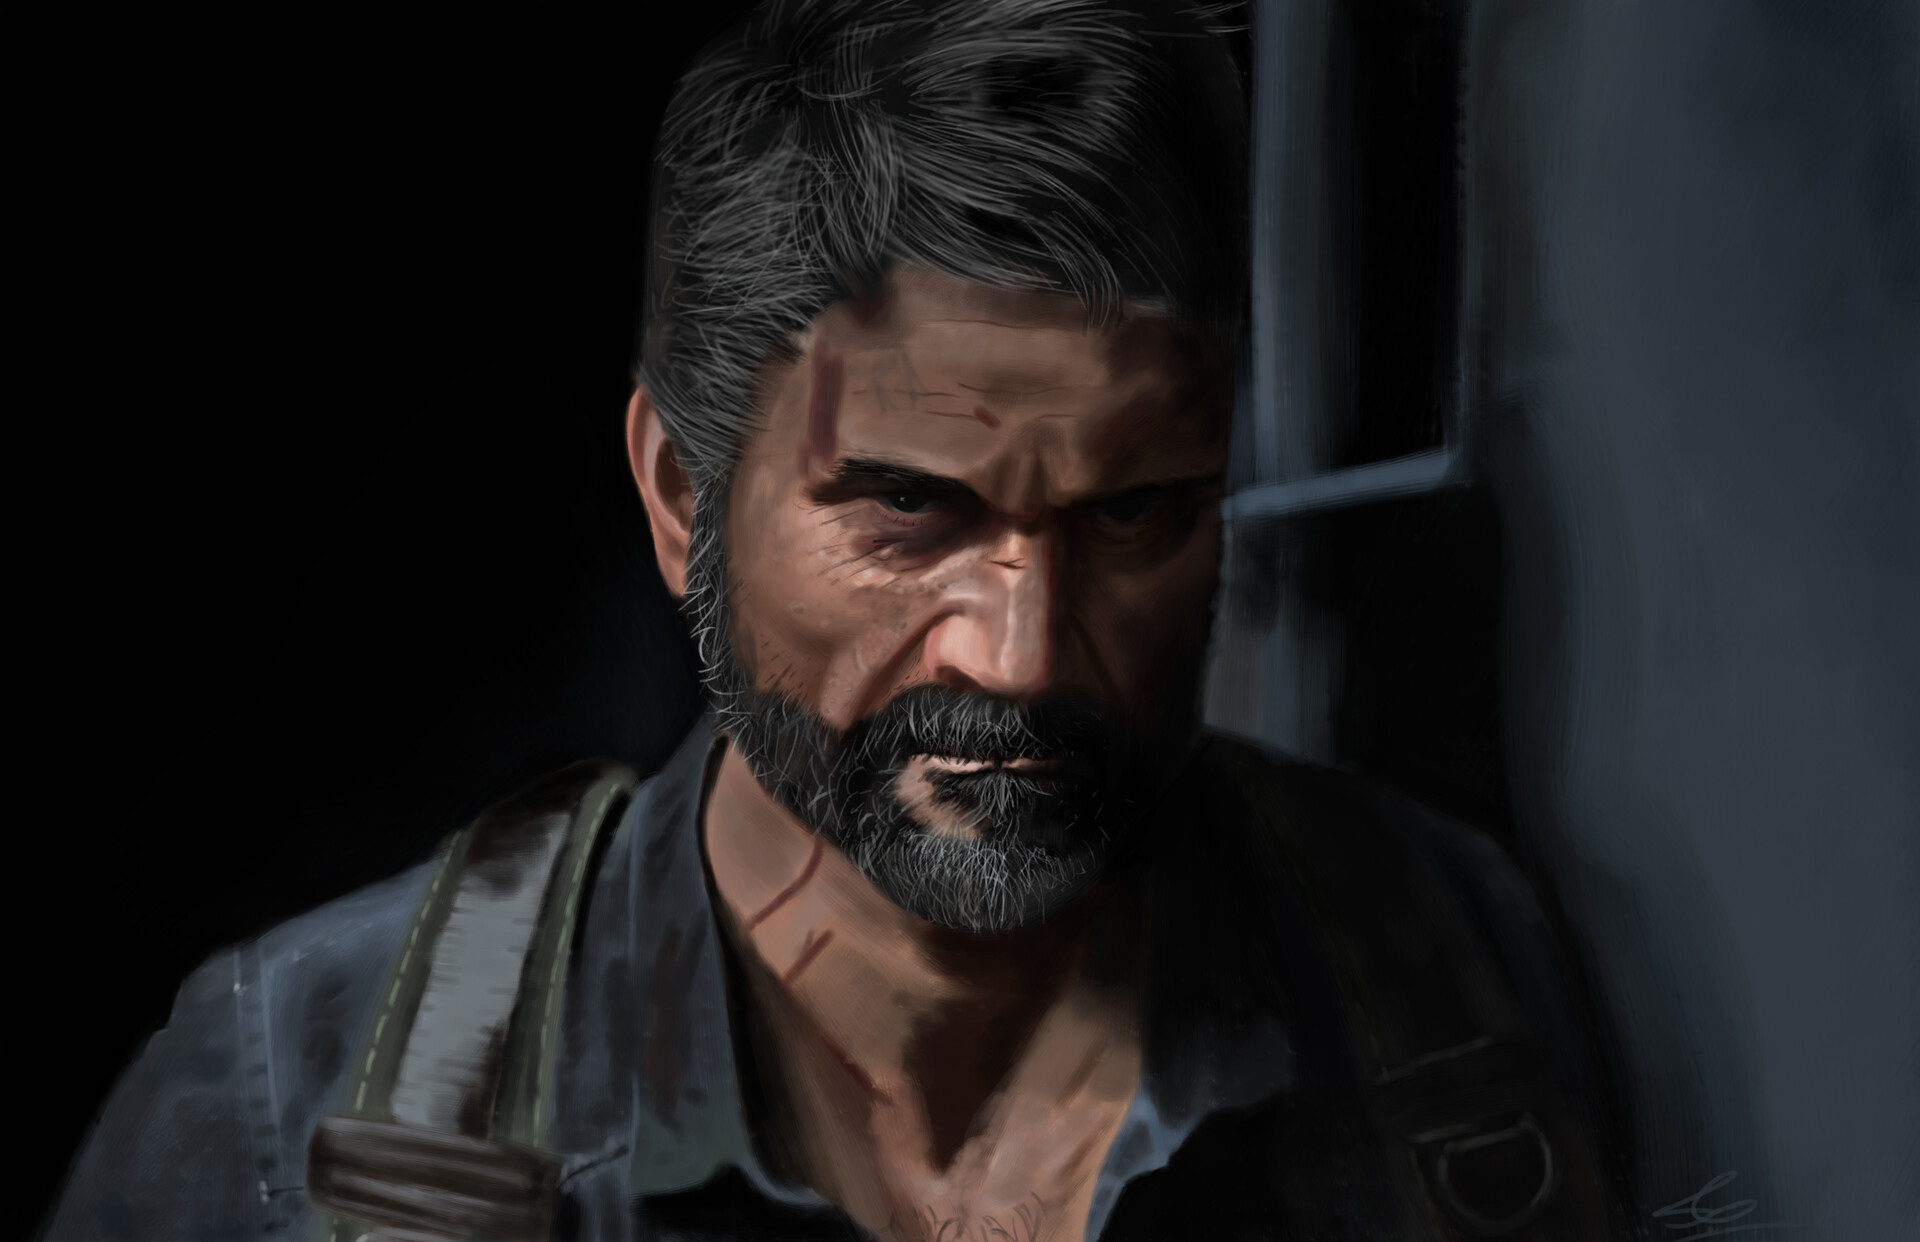 ArtStation - The Last of Us Part I: Joel Fall Costume